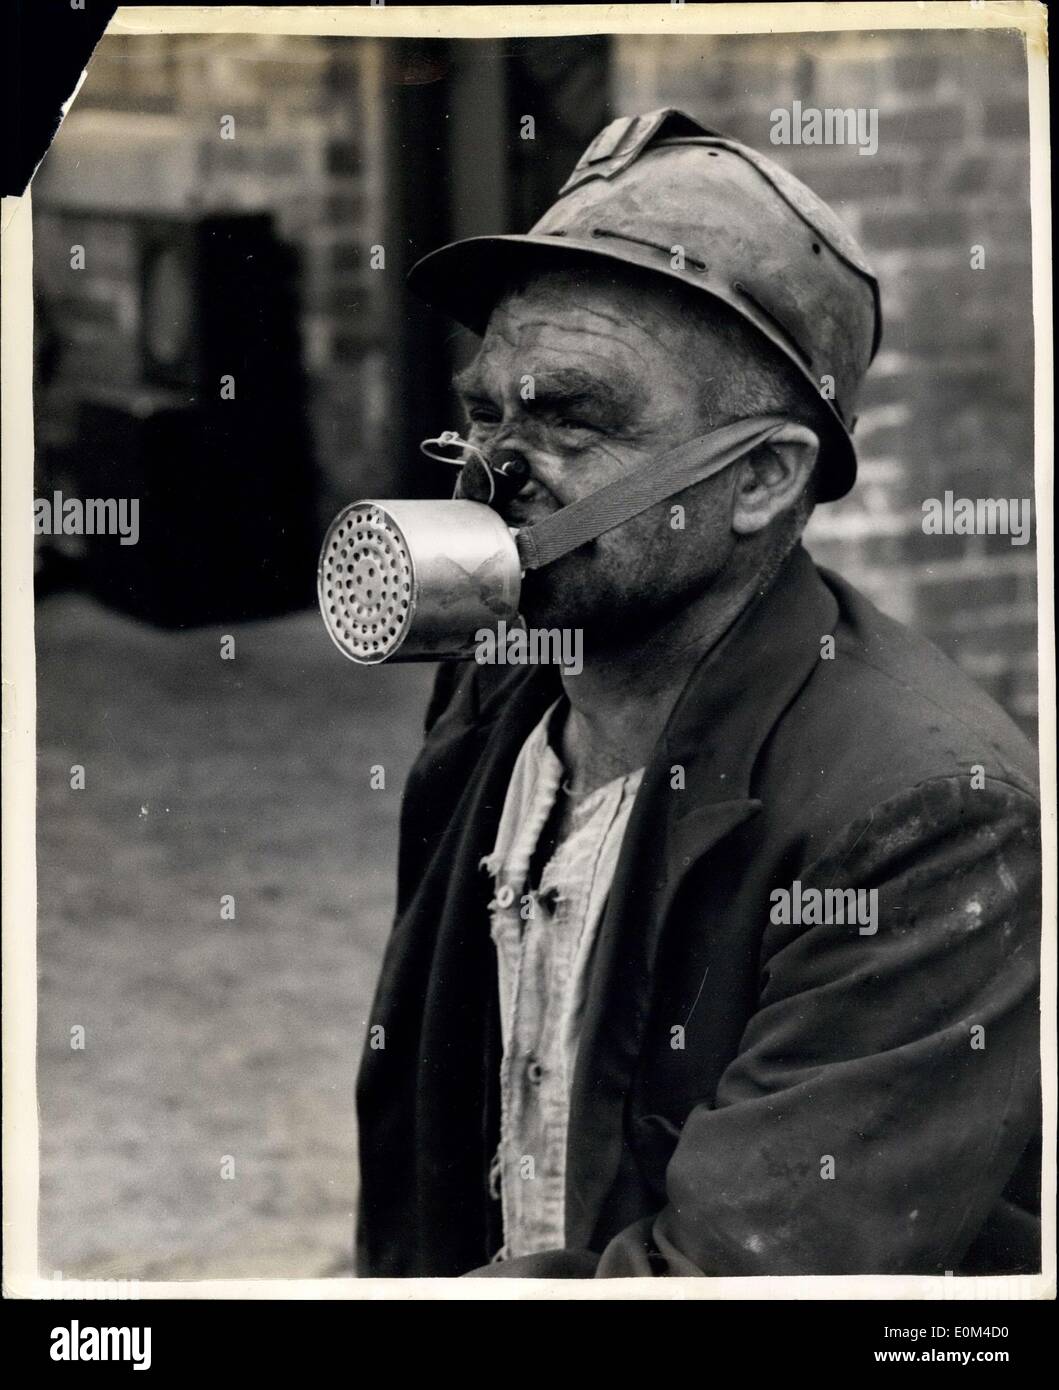 16. Juni 1953 - '''' für für zu testenden Bergarbeiterinnen. Tragbare Gasmaske Für Männer: Eine neue Art von 'Selbstresouer' ist es, bei sieben Gollieries im ganzen Land ausprobiert zu werden und Bergleute werden ihre Reaktionen auf die Resouers End m Vorschläge zu Verbesserungen usw. berichten.der 'Selbstresouer' ist eine Maske, die 11/2 Pfund wiegt und durch Streifen an der Stelle gehalten wird Der Hinterkopf und eine Gummiklappe werden von den Zähnen gegriffen. Ein Griff verhindert, dass der Träger durch die Nase atmet Stockfoto